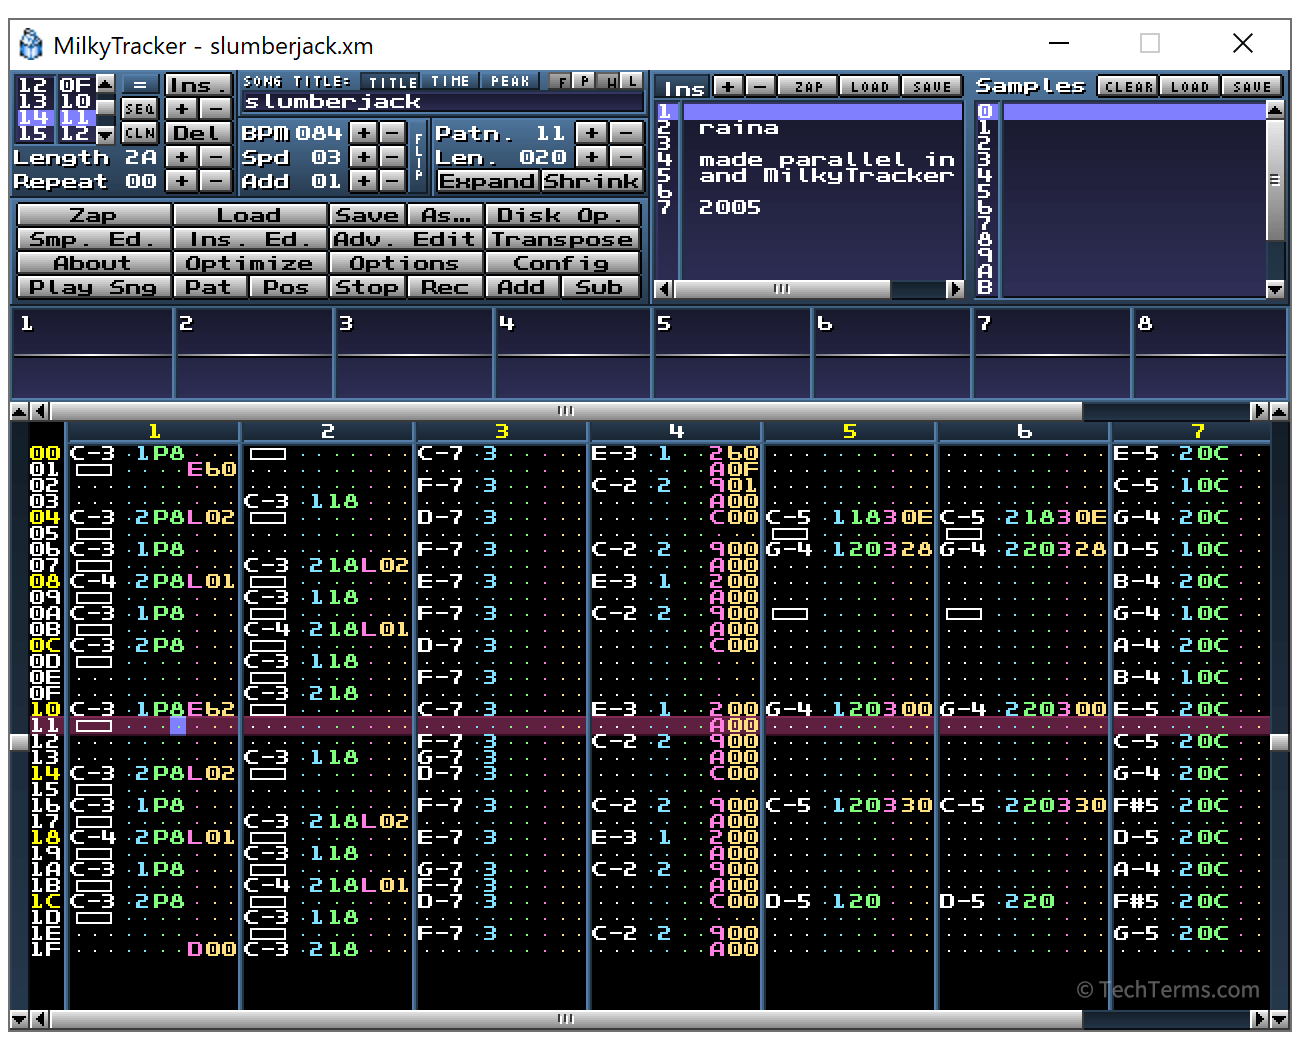 A module file in the MilkyTracker music tracker